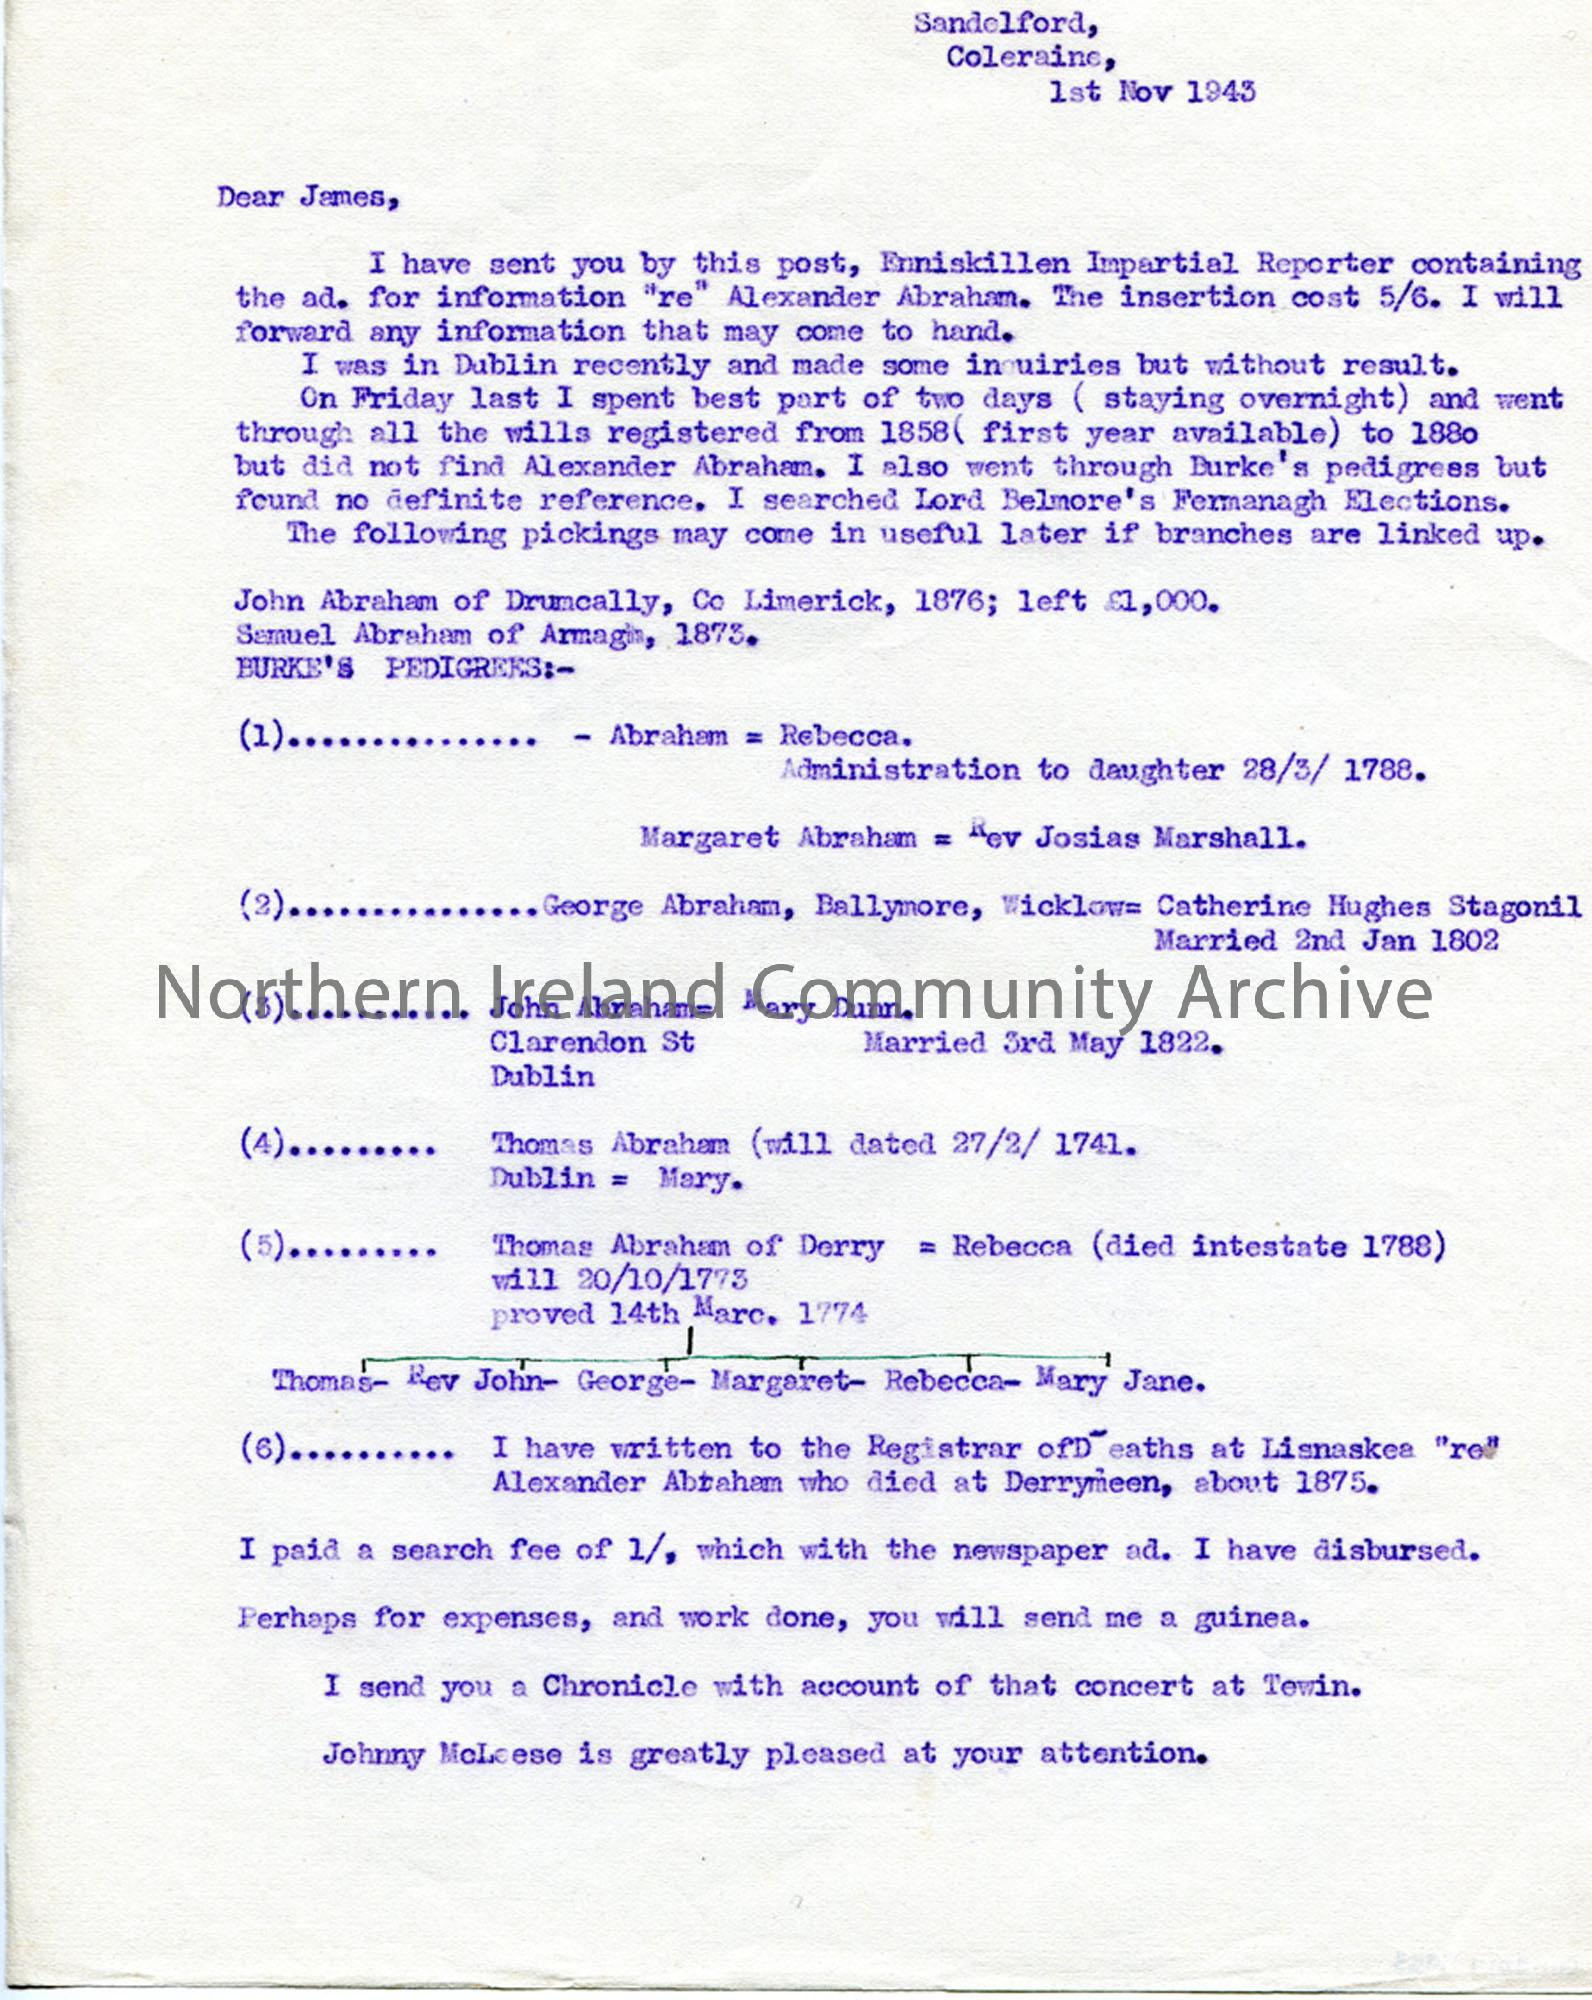 Letter from Sam Henry 1.11.1943